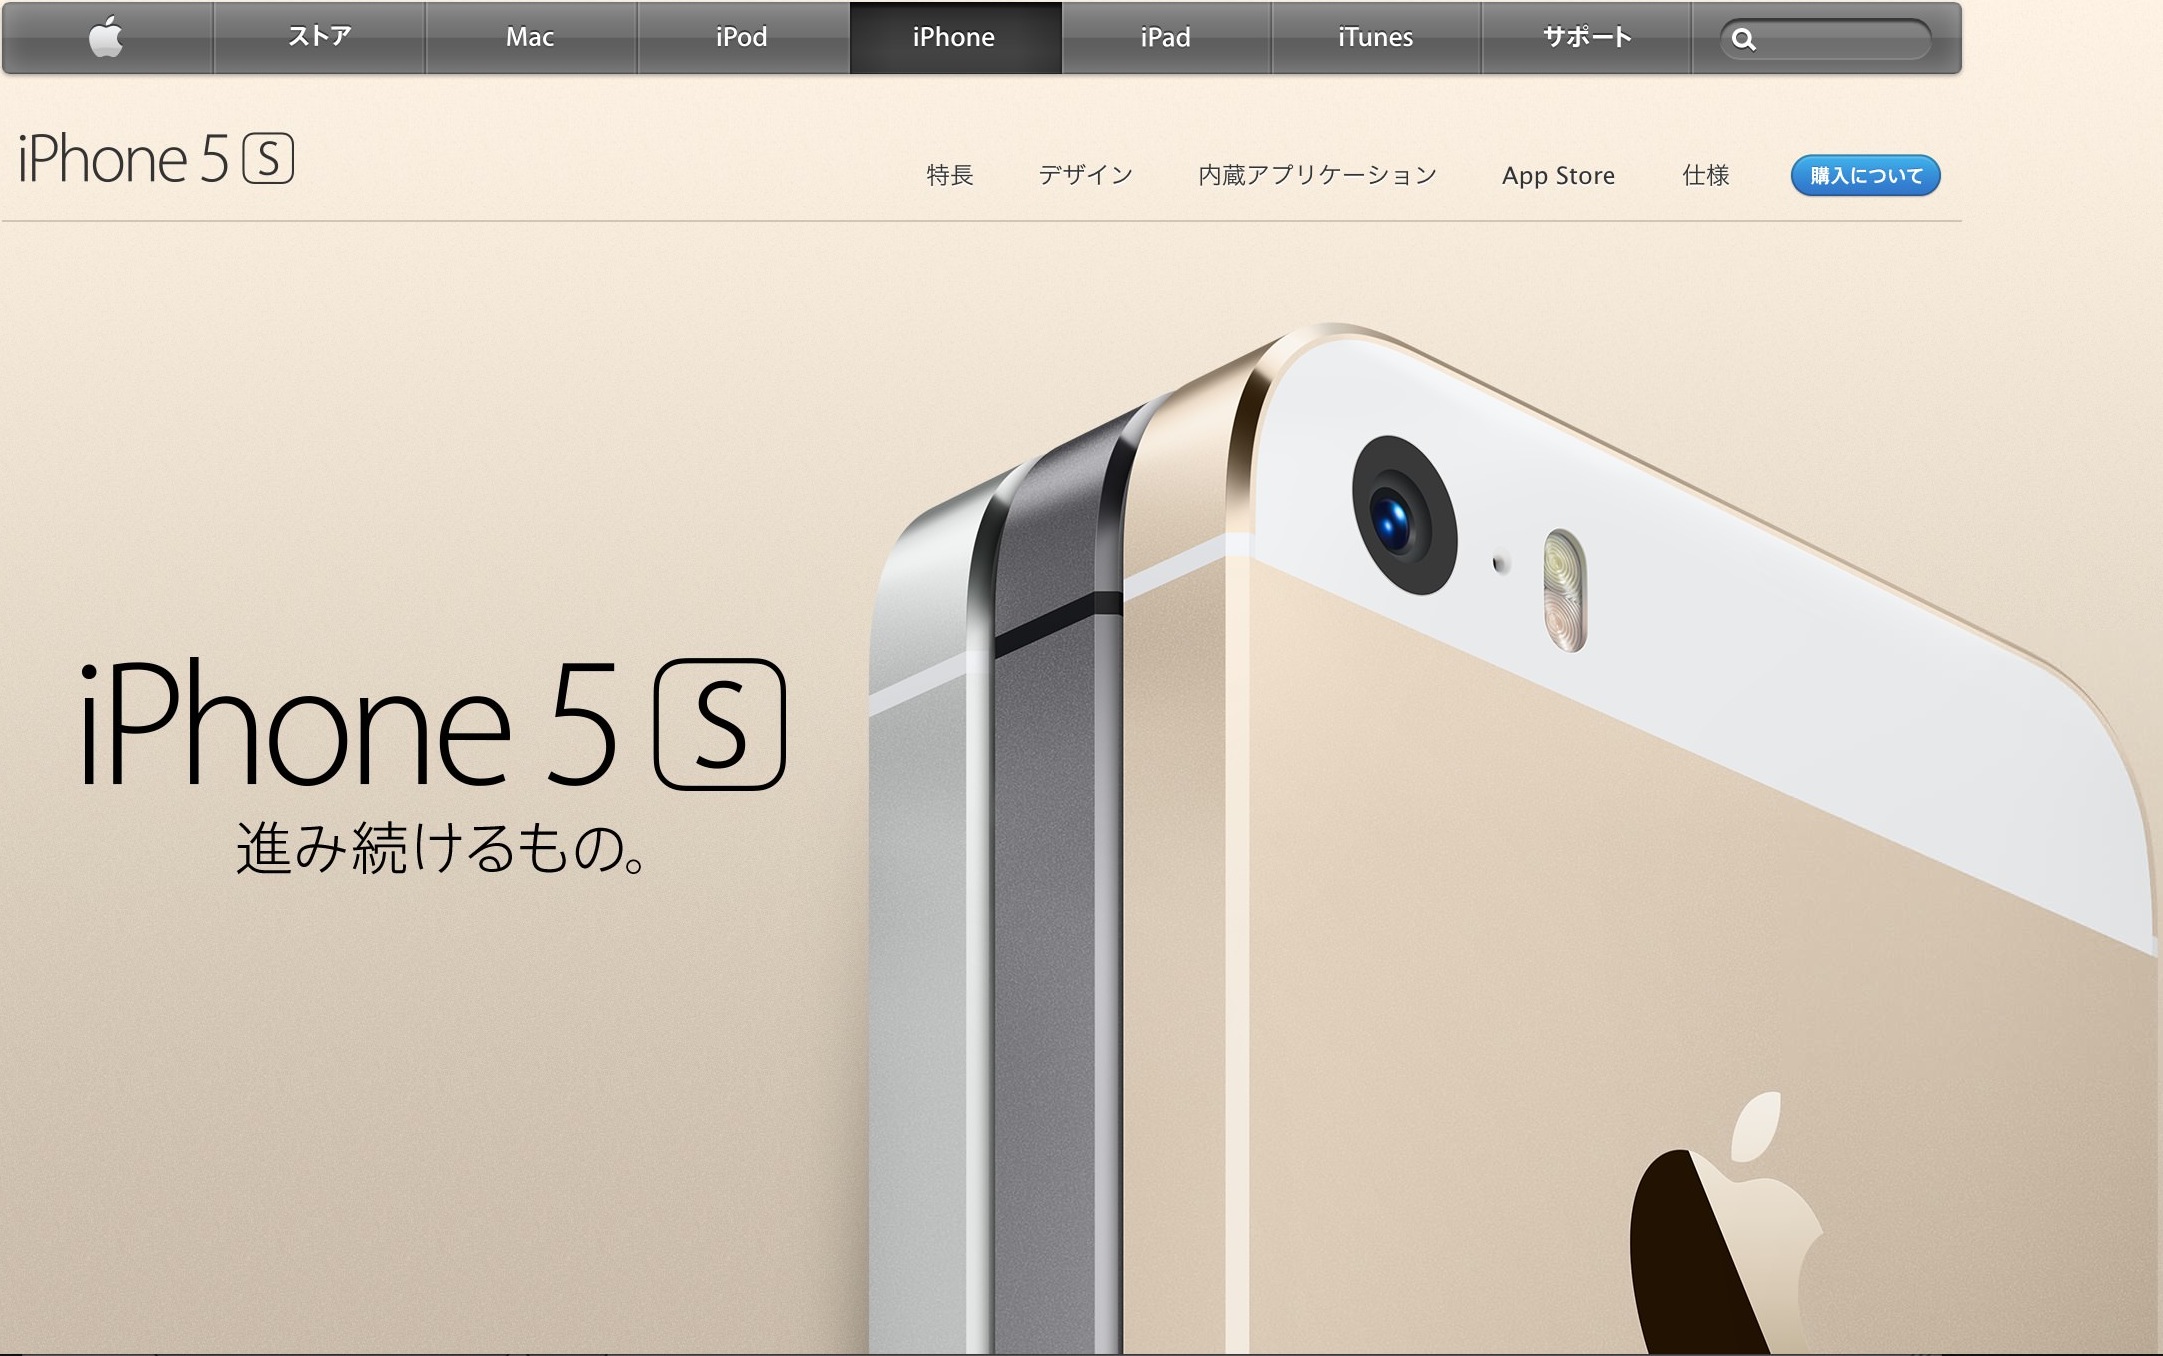 iPhone5S/iPhone5Cが正式発表、Apple公式ホームページが更新されてるぞ